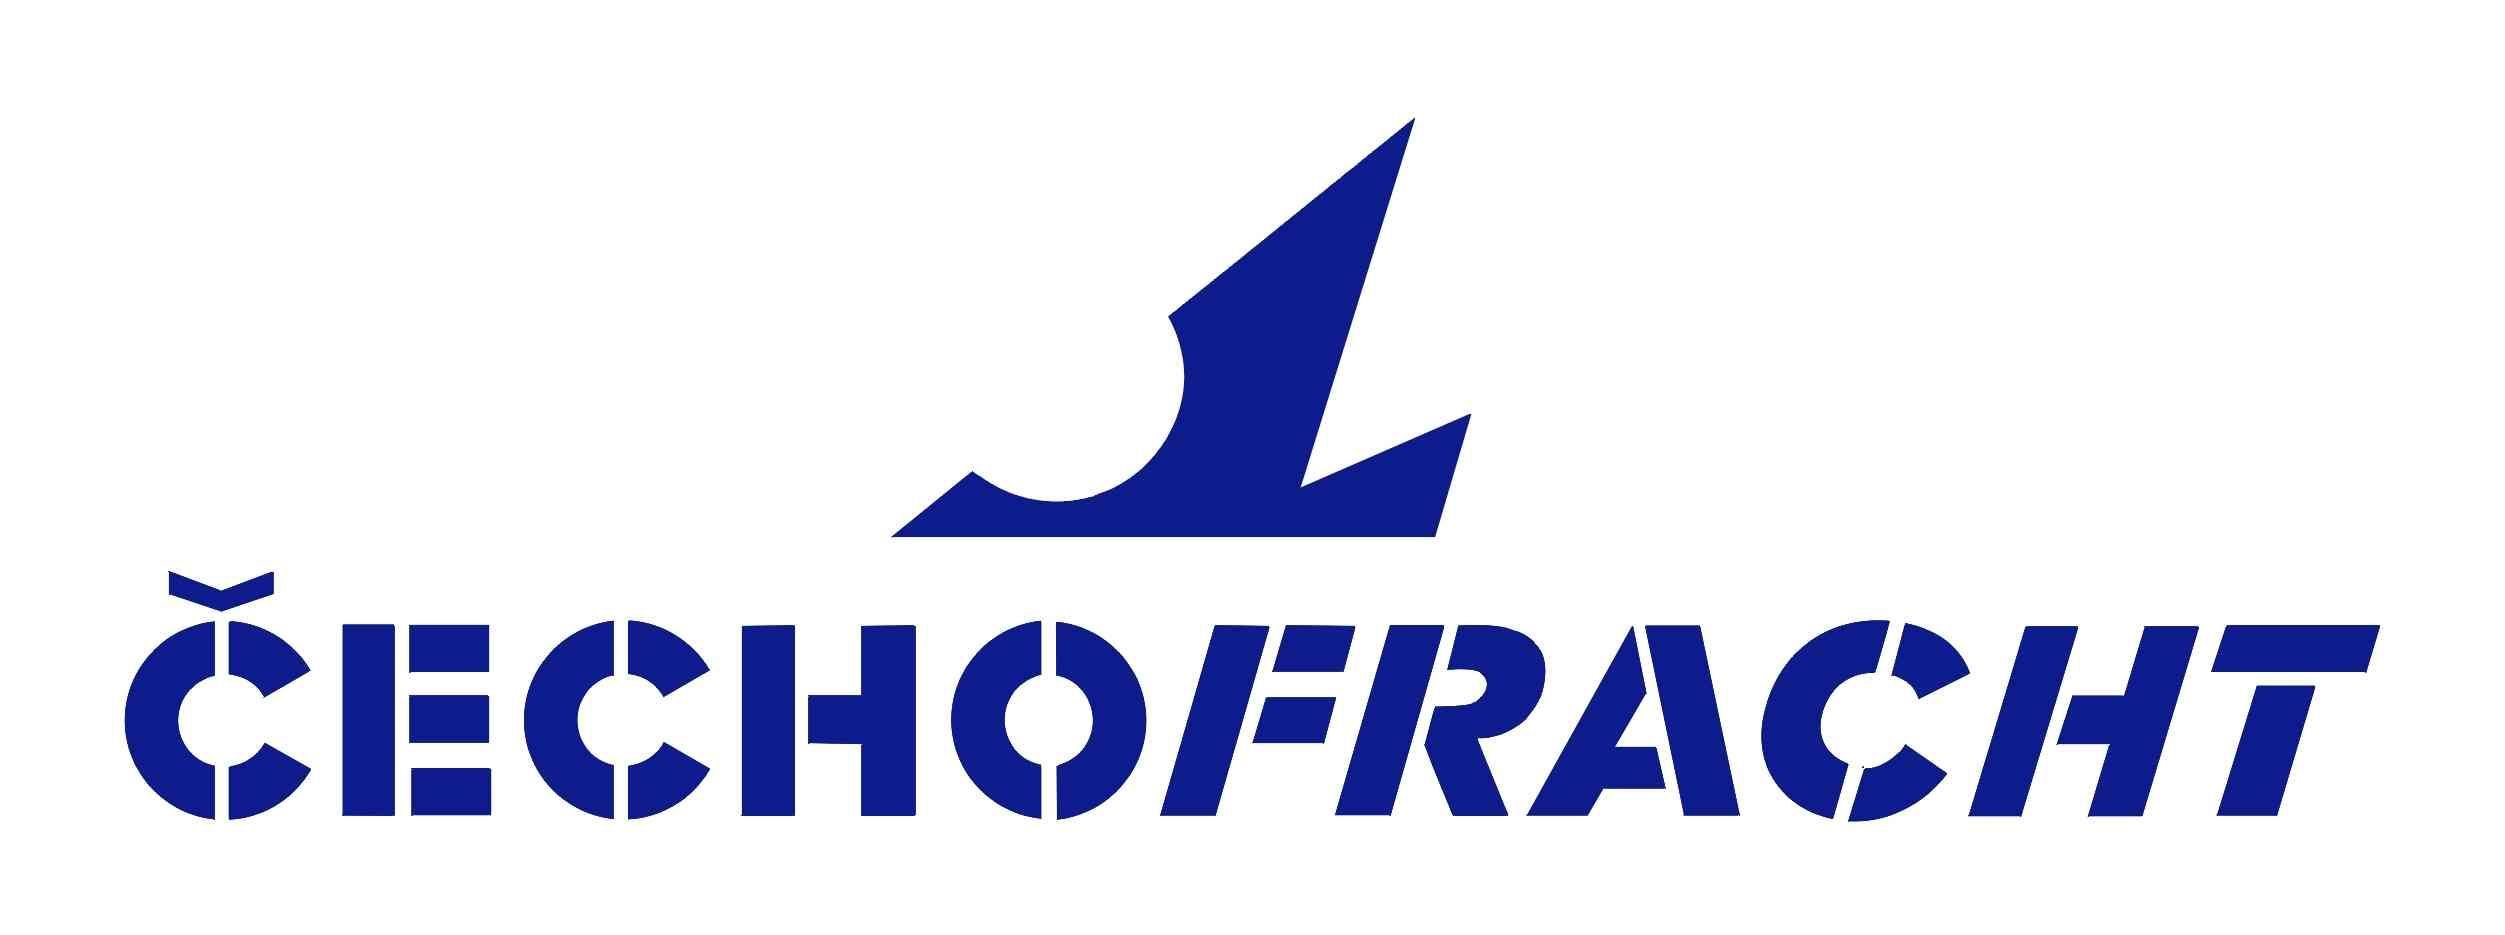 Čechofracht logo